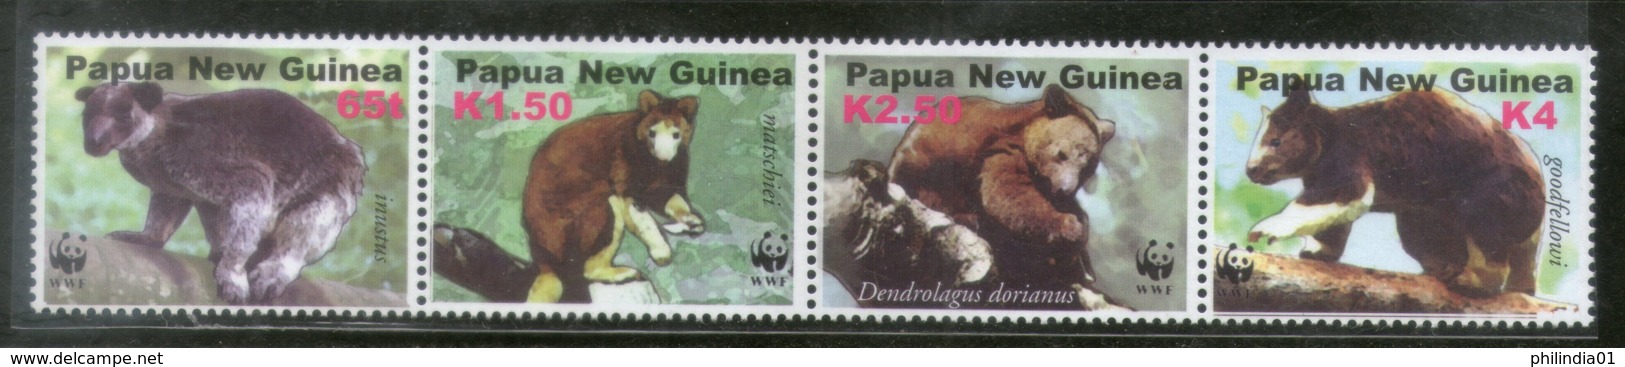 Papua New Guinea 2003 WWF Tree Kangaroos Wildlife Animal Sc 1090 MNH # 328 - Unused Stamps